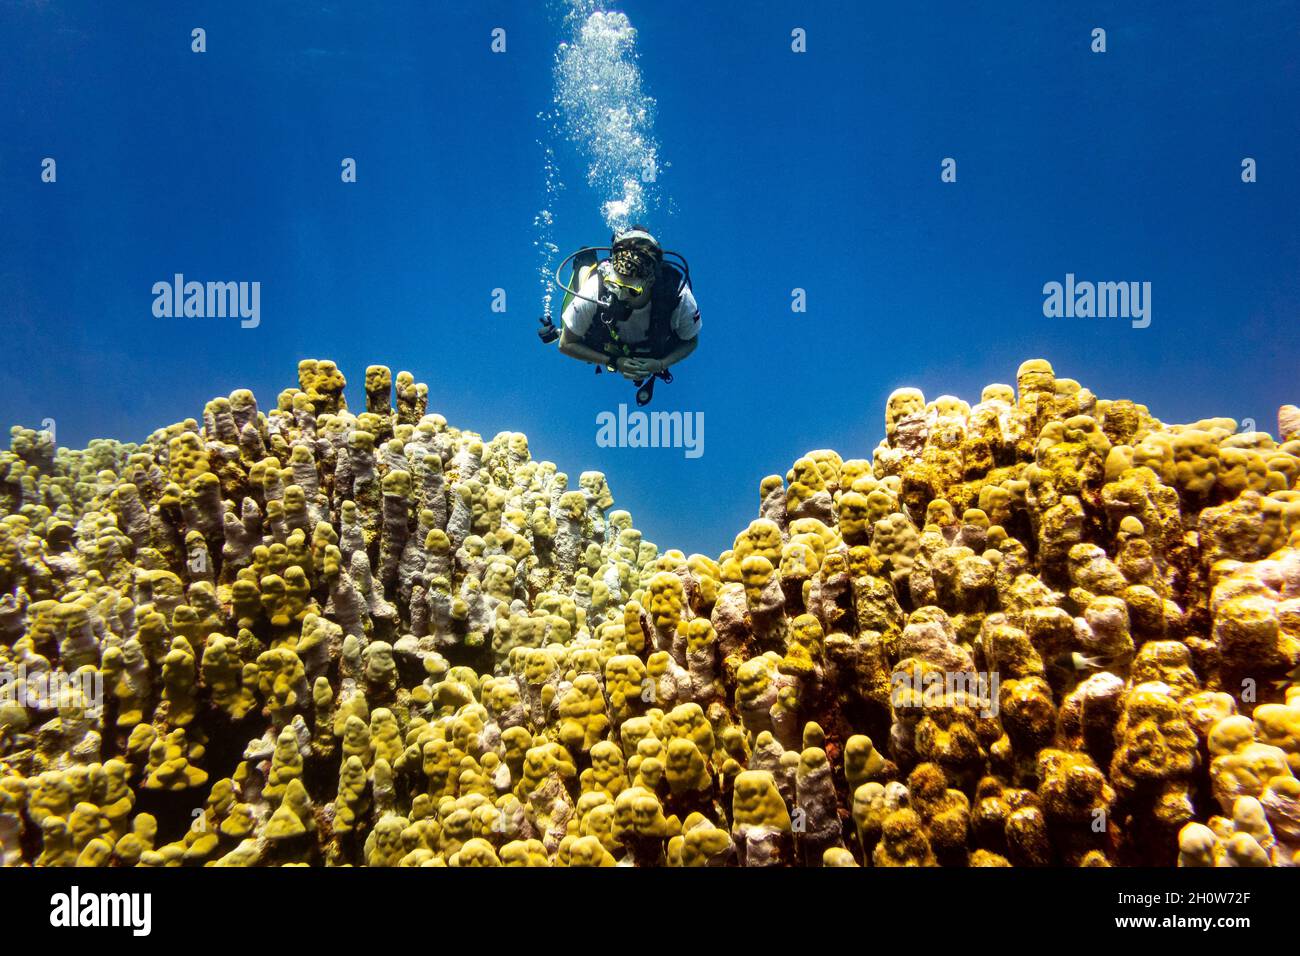 Eine Taucherin, die in tiefblau über einem gelben Korallenriff schwimmend ist Stockfoto